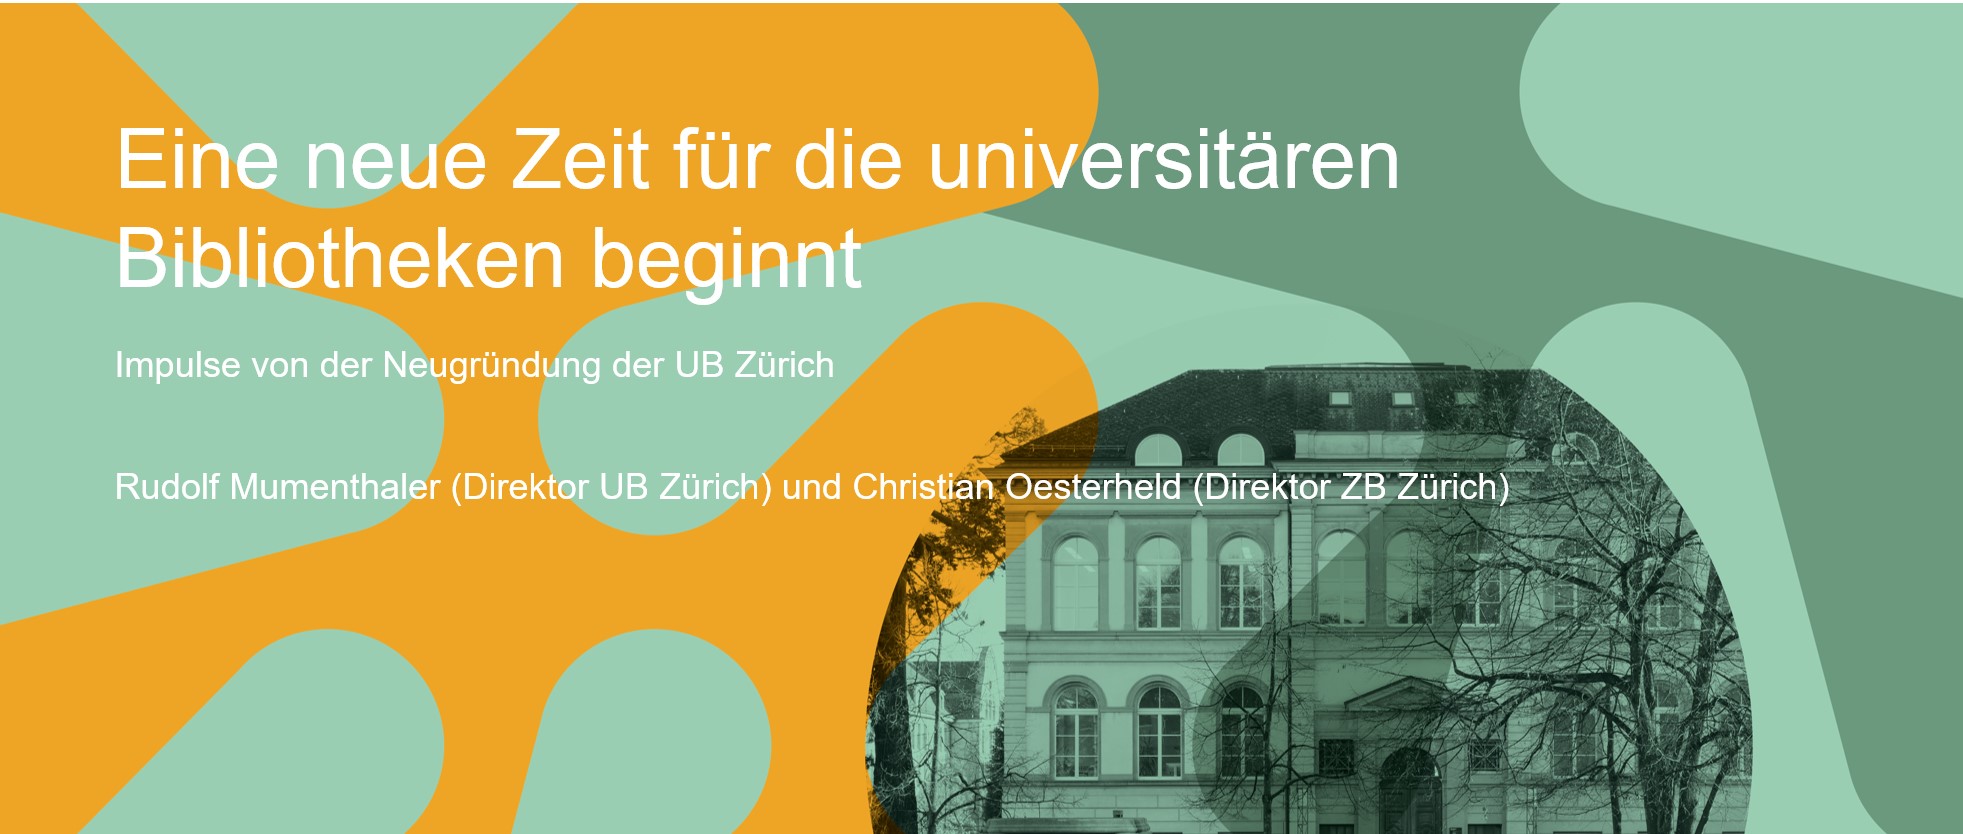 Eine neue Zeit für die universitären Bibliotheken beginnt: Impulse von der Neugründung der UB Zürich und ihrer Zusammenarbeit mit der Zentralbibliothek